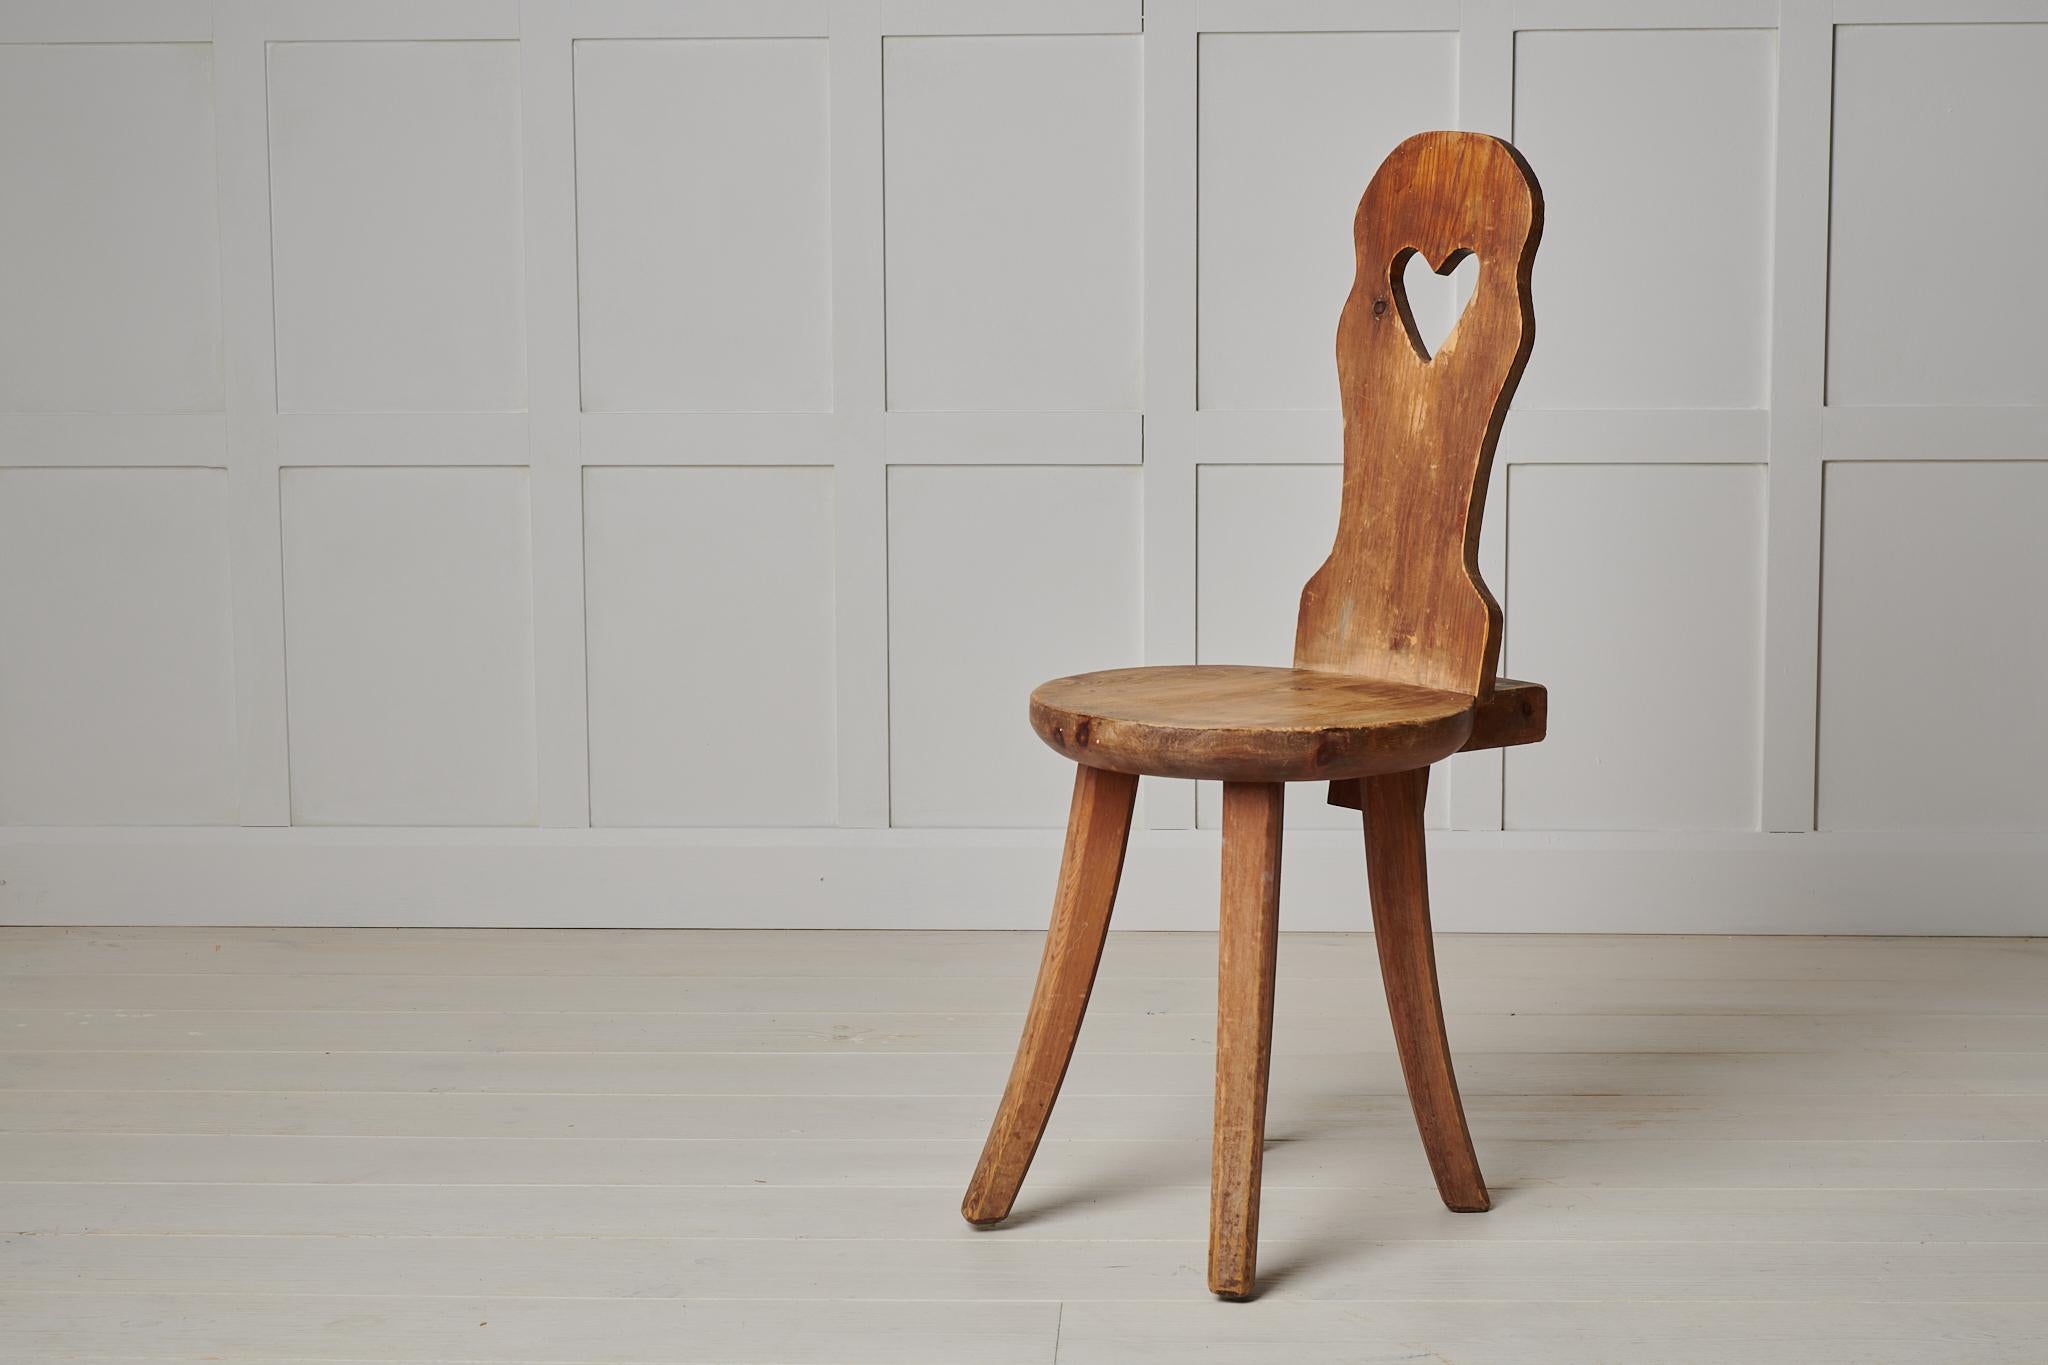 Schwedischer Volkskunststuhl aus den späten 1800er Jahren. Der Stuhl ist handgefertigt aus Kiefernholz mit einem ausgeschnittenen Herz auf der Rückenlehne. Der Stuhl wurde nie gestrichen, so dass das Kiefernholz mit der Zeit und dem Gebrauch im